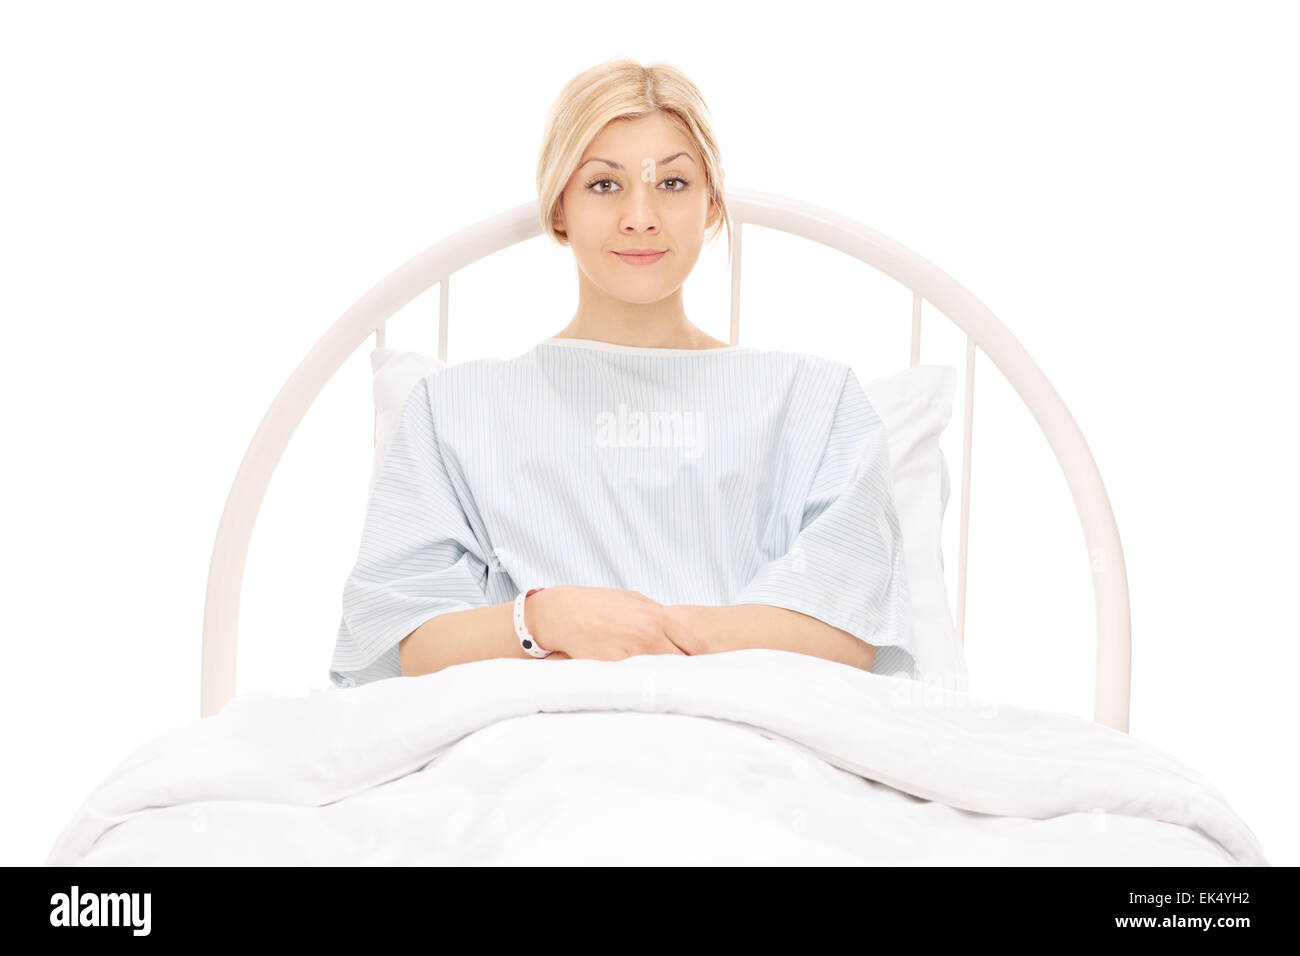 Belle jeune femme couchée dans un lit d'hôpital et posant isolé sur fond blanc Banque D'Images